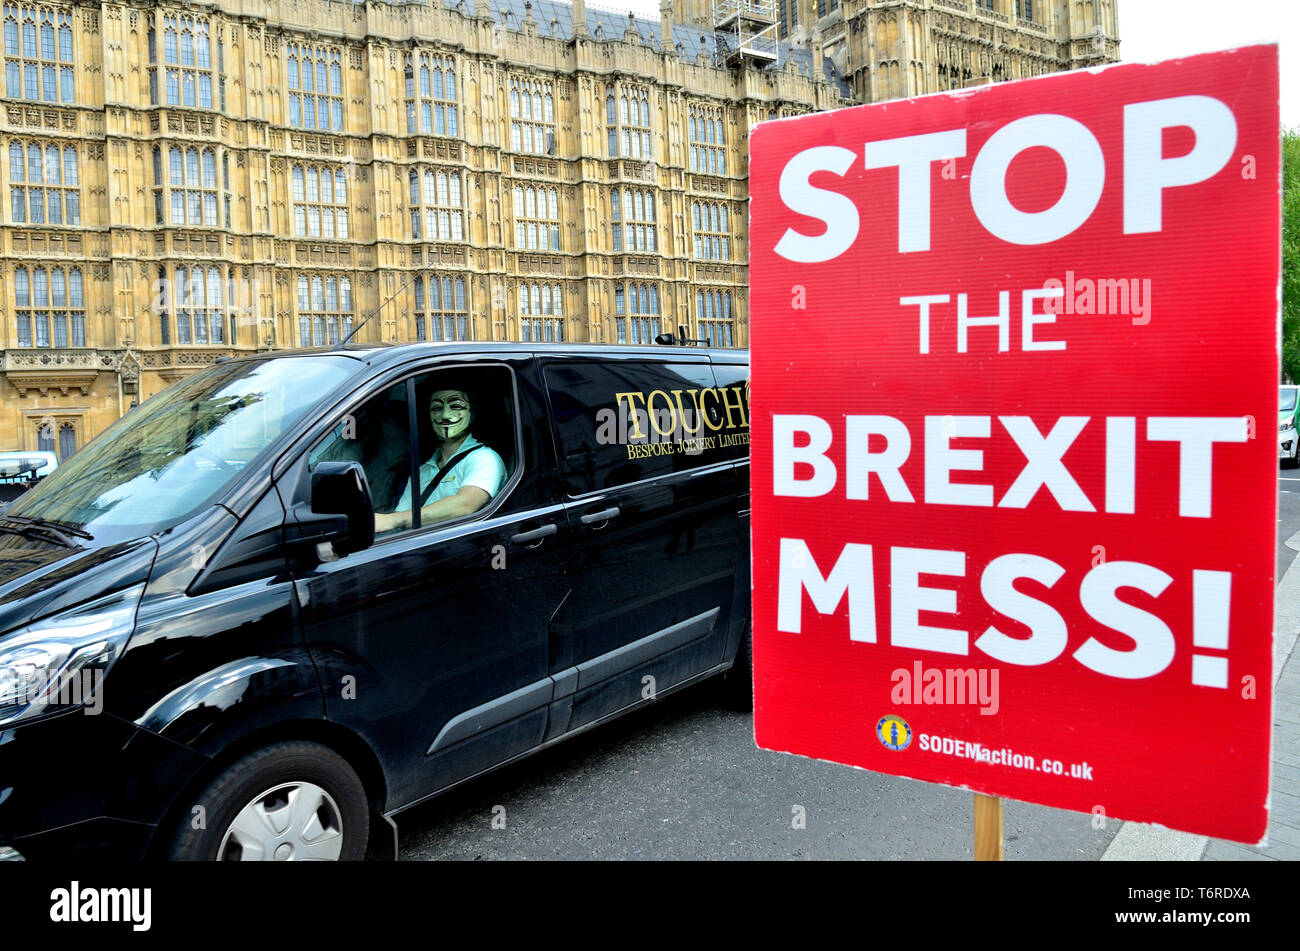 London, England, UK. Mann mit einem V für Vendetta Maske auf dem Beifahrersitz eines Van, das Parlament passieren Stockfoto